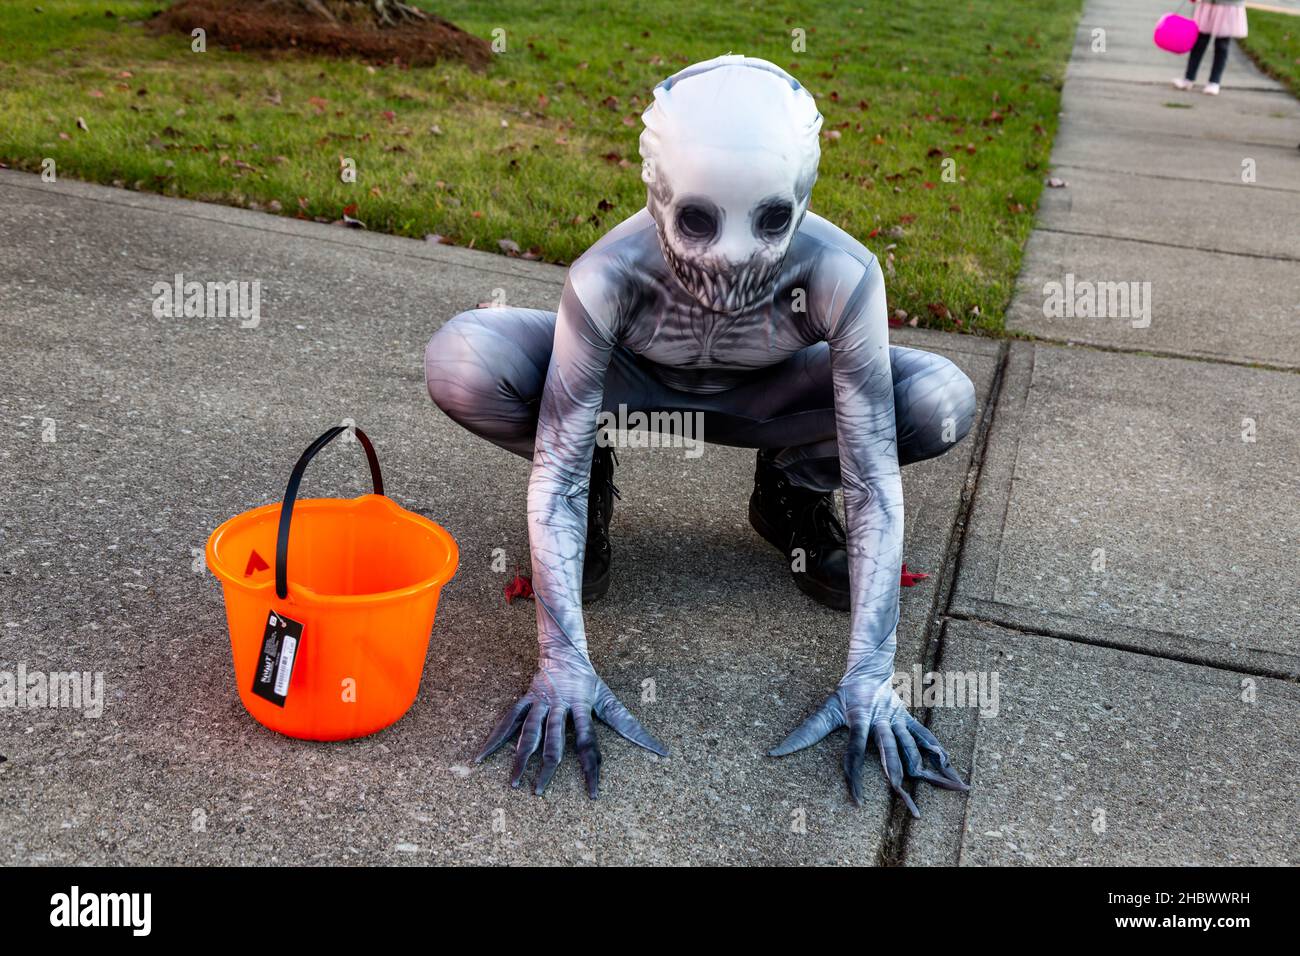 Ein junger Trick oder Treater hockt auf der Auffahrt, als er Halloween in einem gruseligen Zentai Zombie Kostüm feiert. Stockfoto